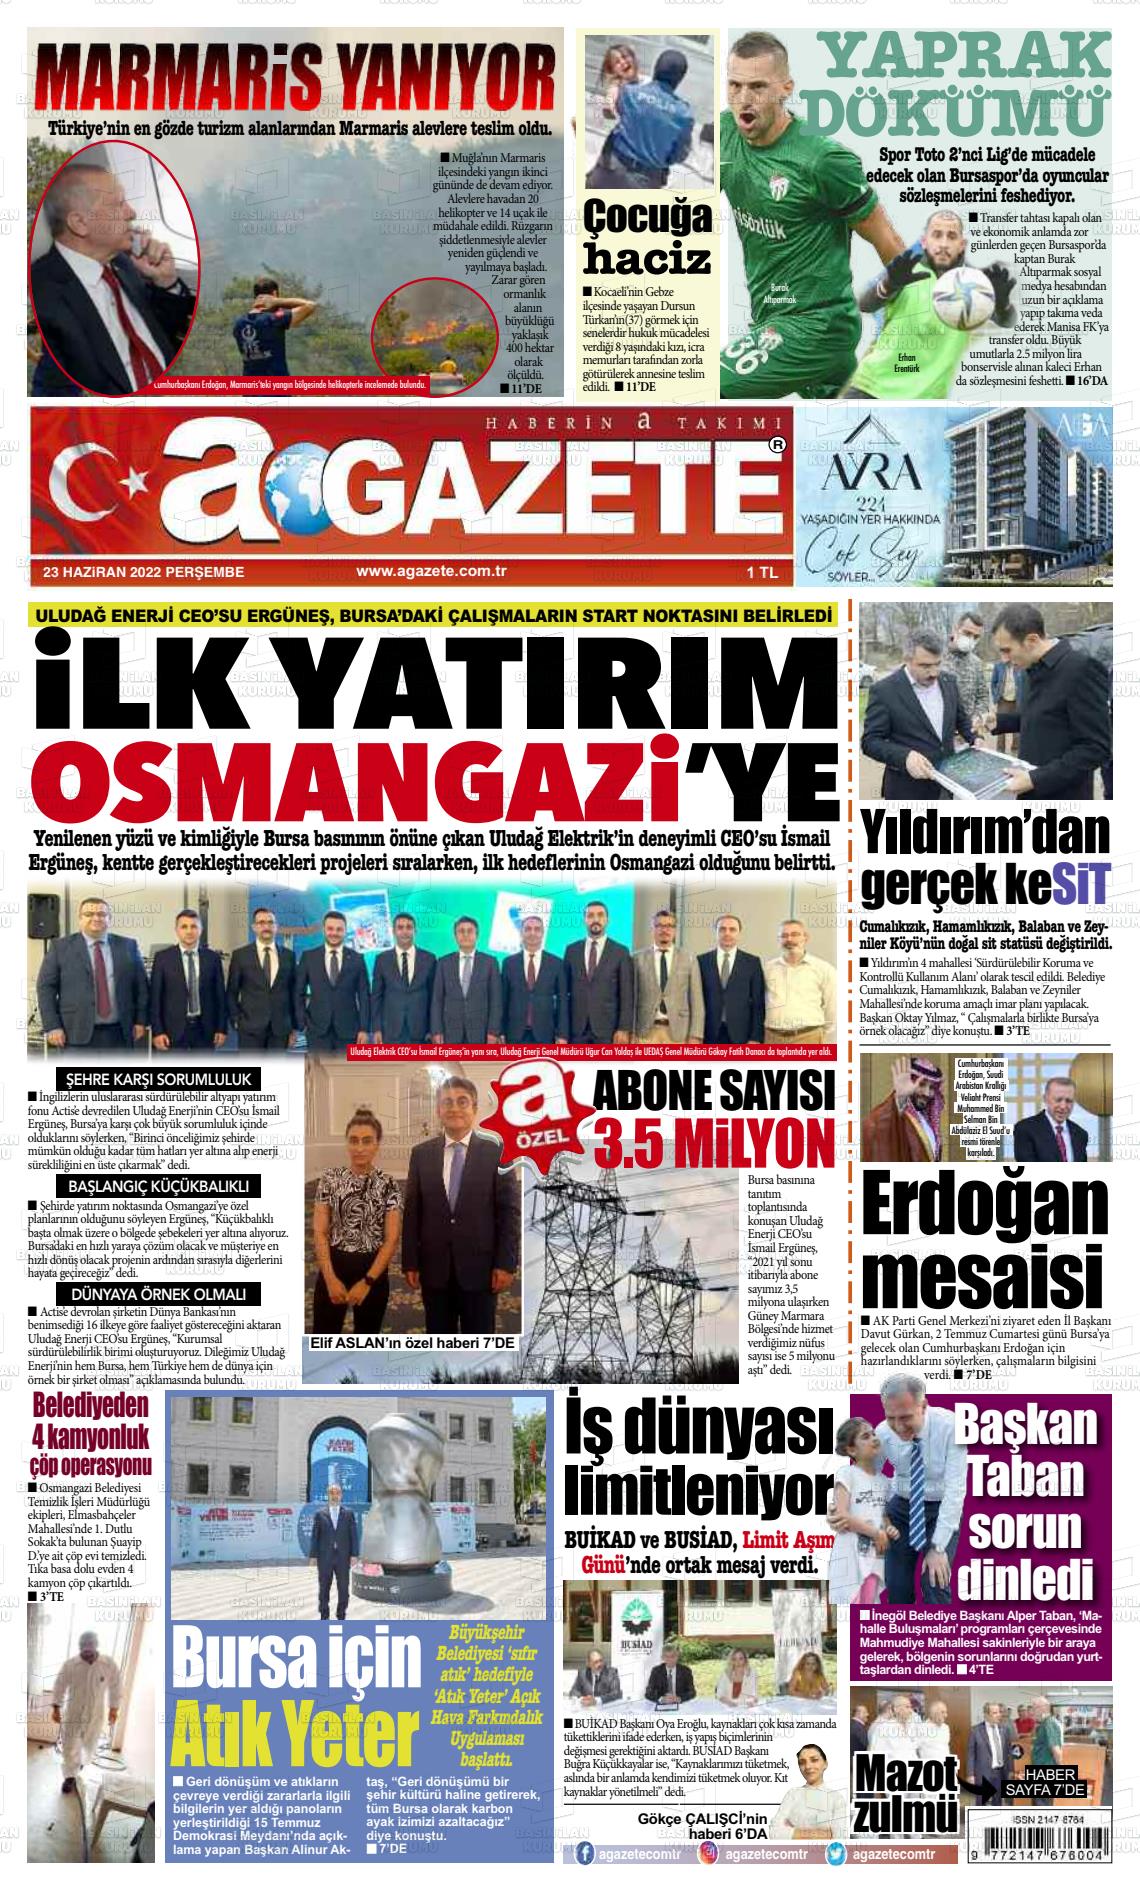 23 Haziran 2022 a gazete Gazete Manşeti